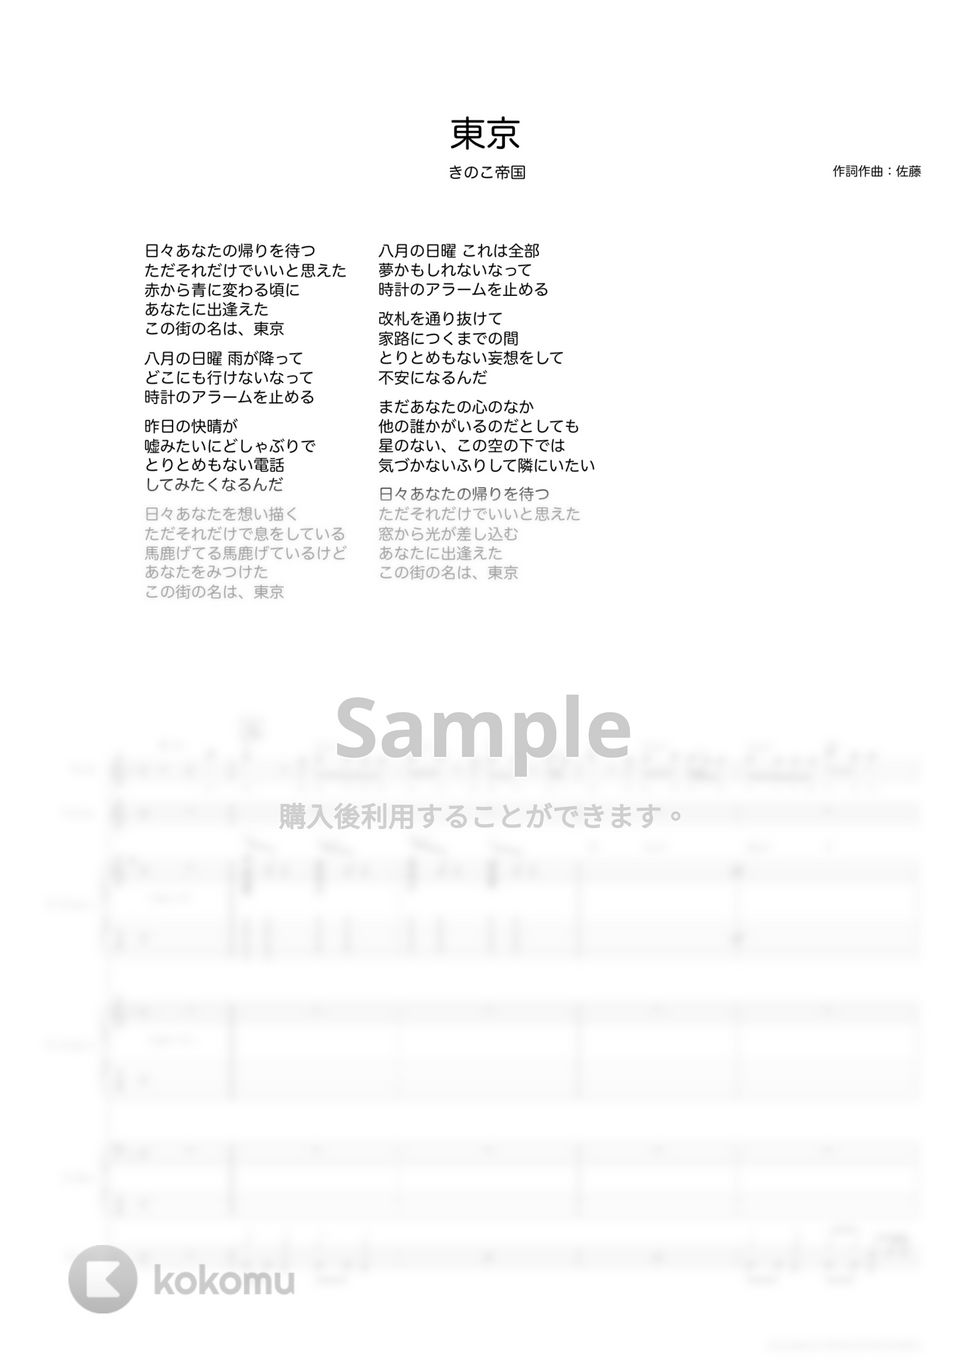 きのこ帝国 - 東京 (バンドスコア) Tab + 1staff by TRIAD GUITAR SCHOOL